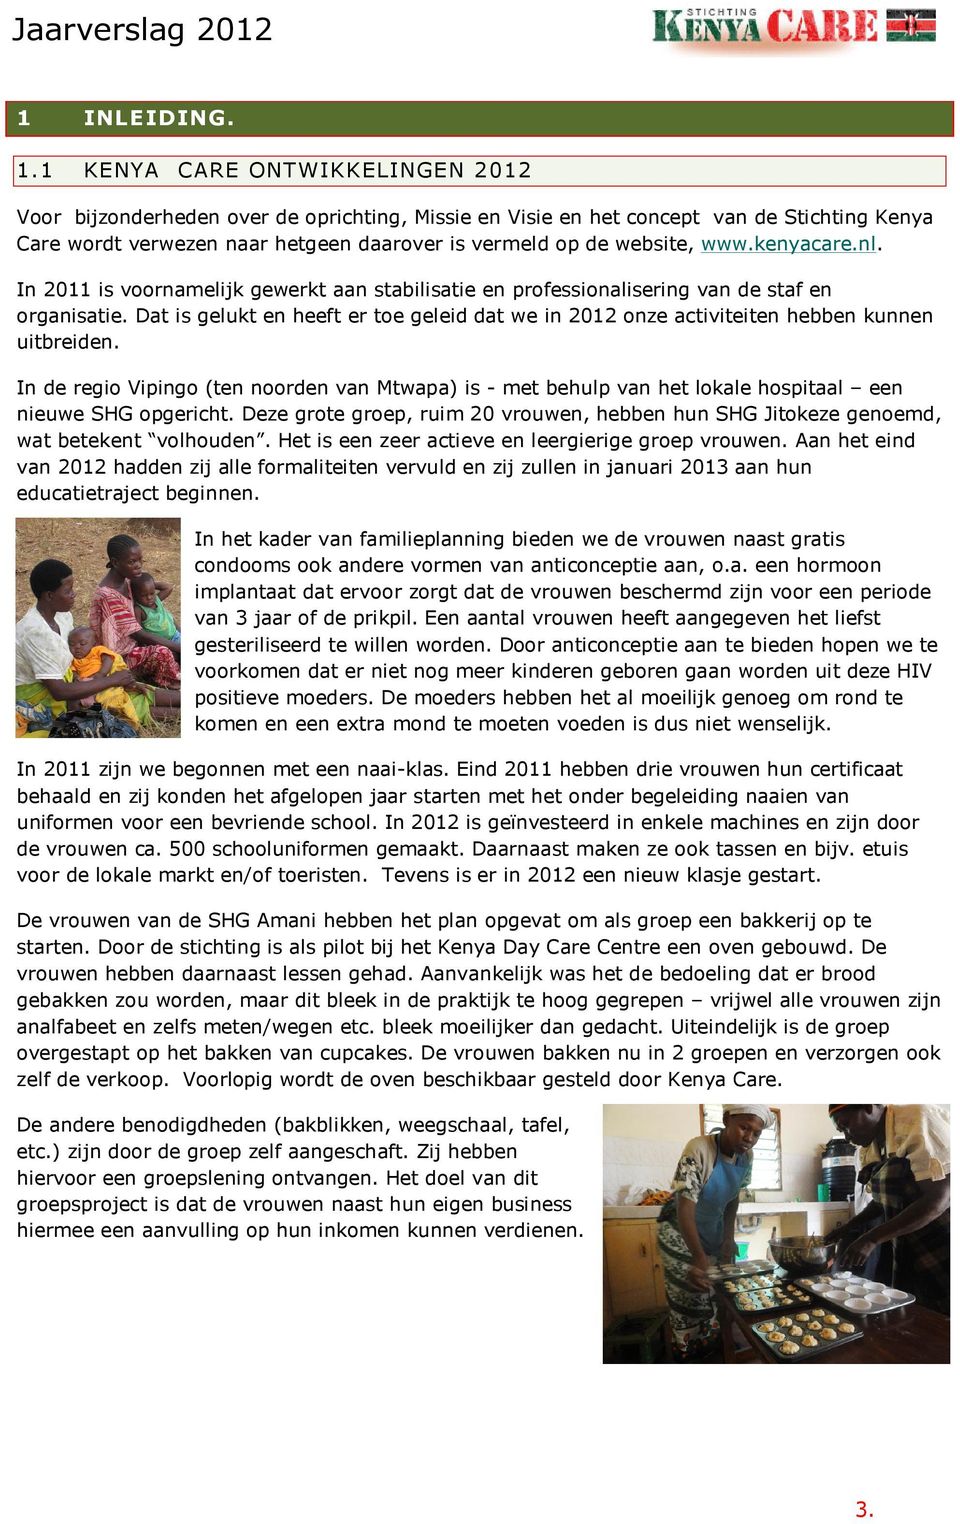 kenyacare.nl. In 2011 is voornamelijk gewerkt aan stabilisatie en professionalisering van de staf en organisatie.